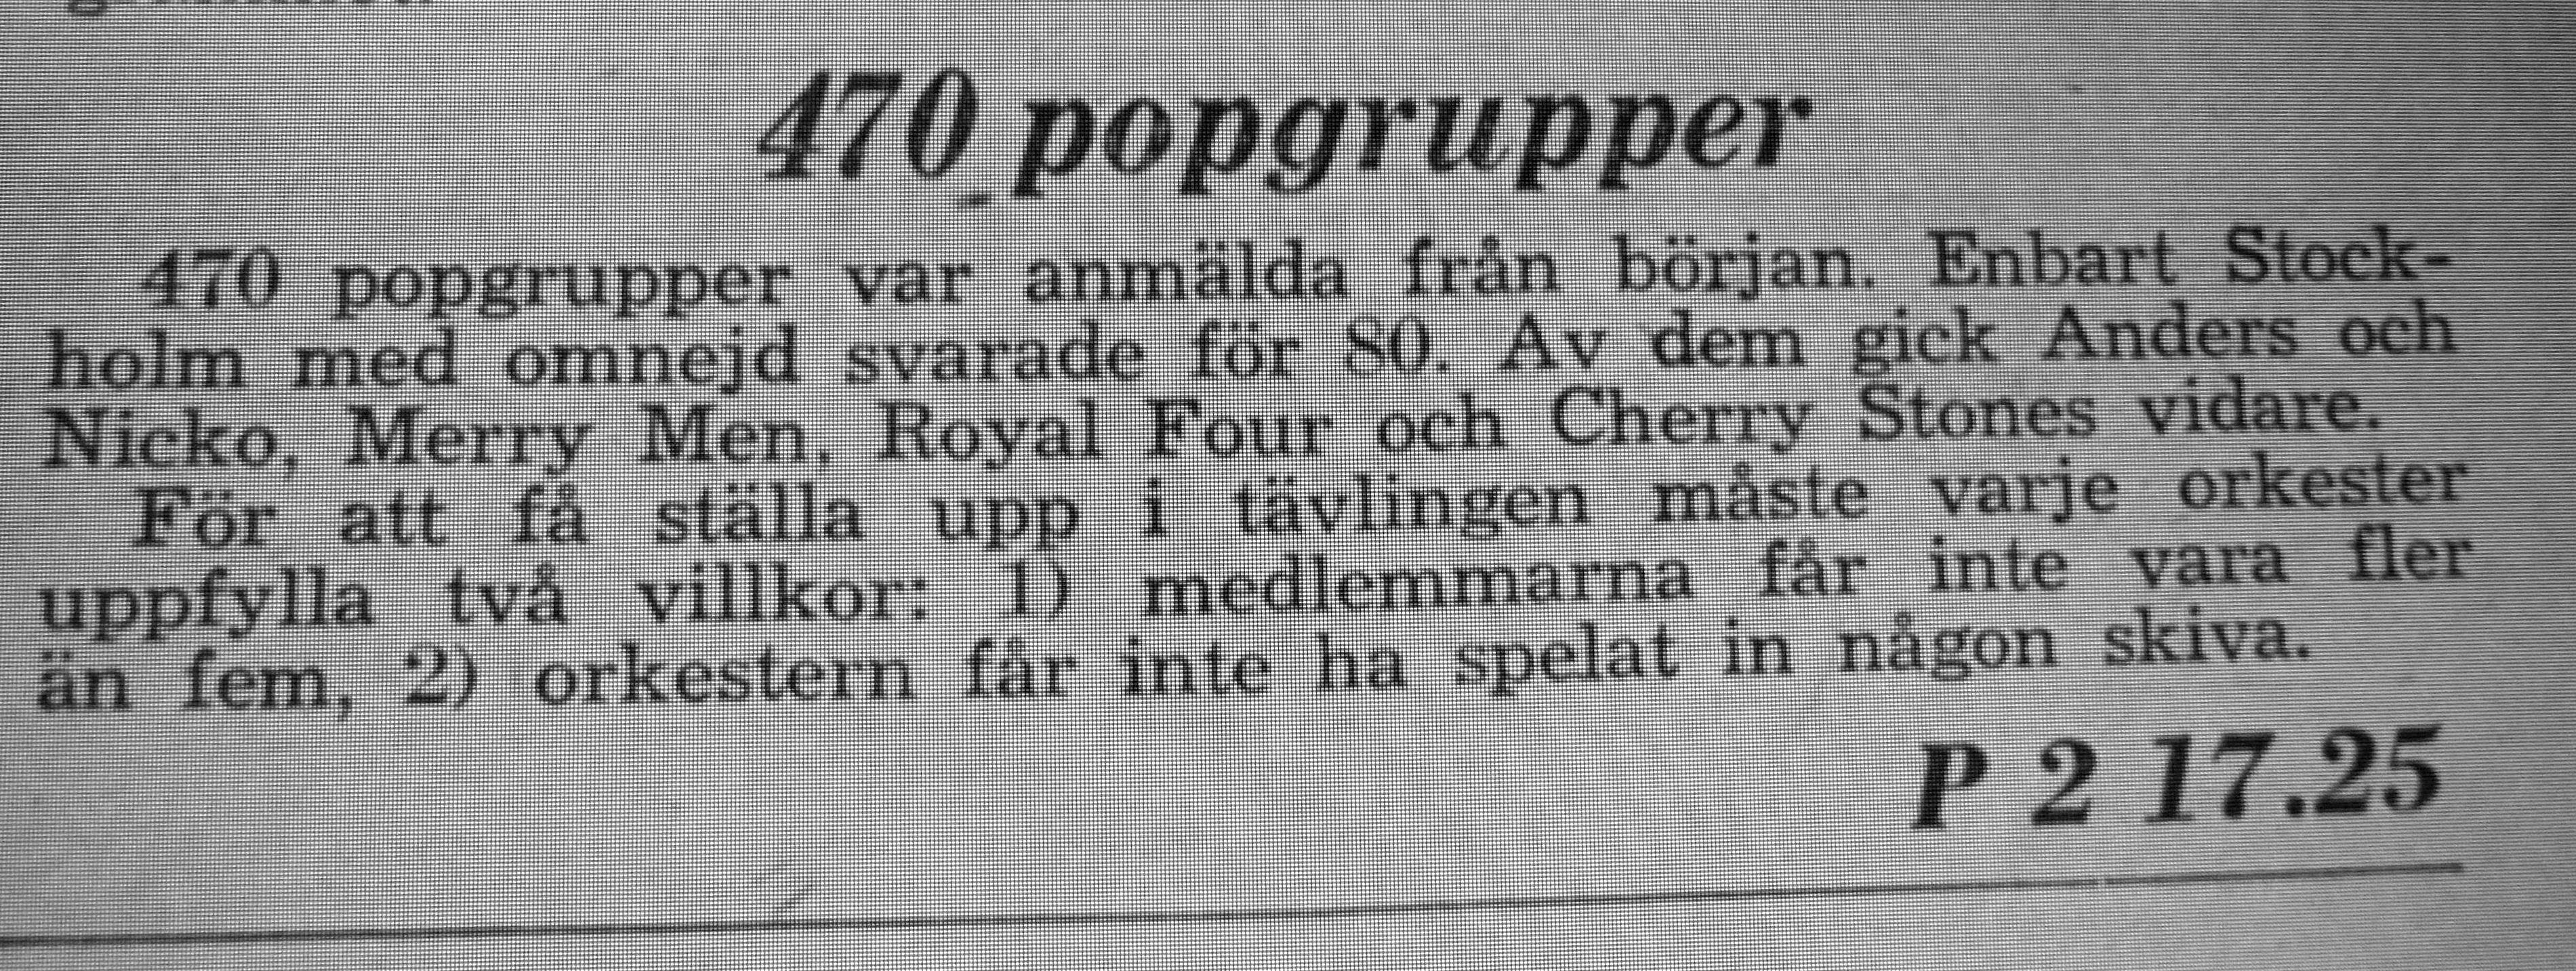 1965 opbandstävling_sv v